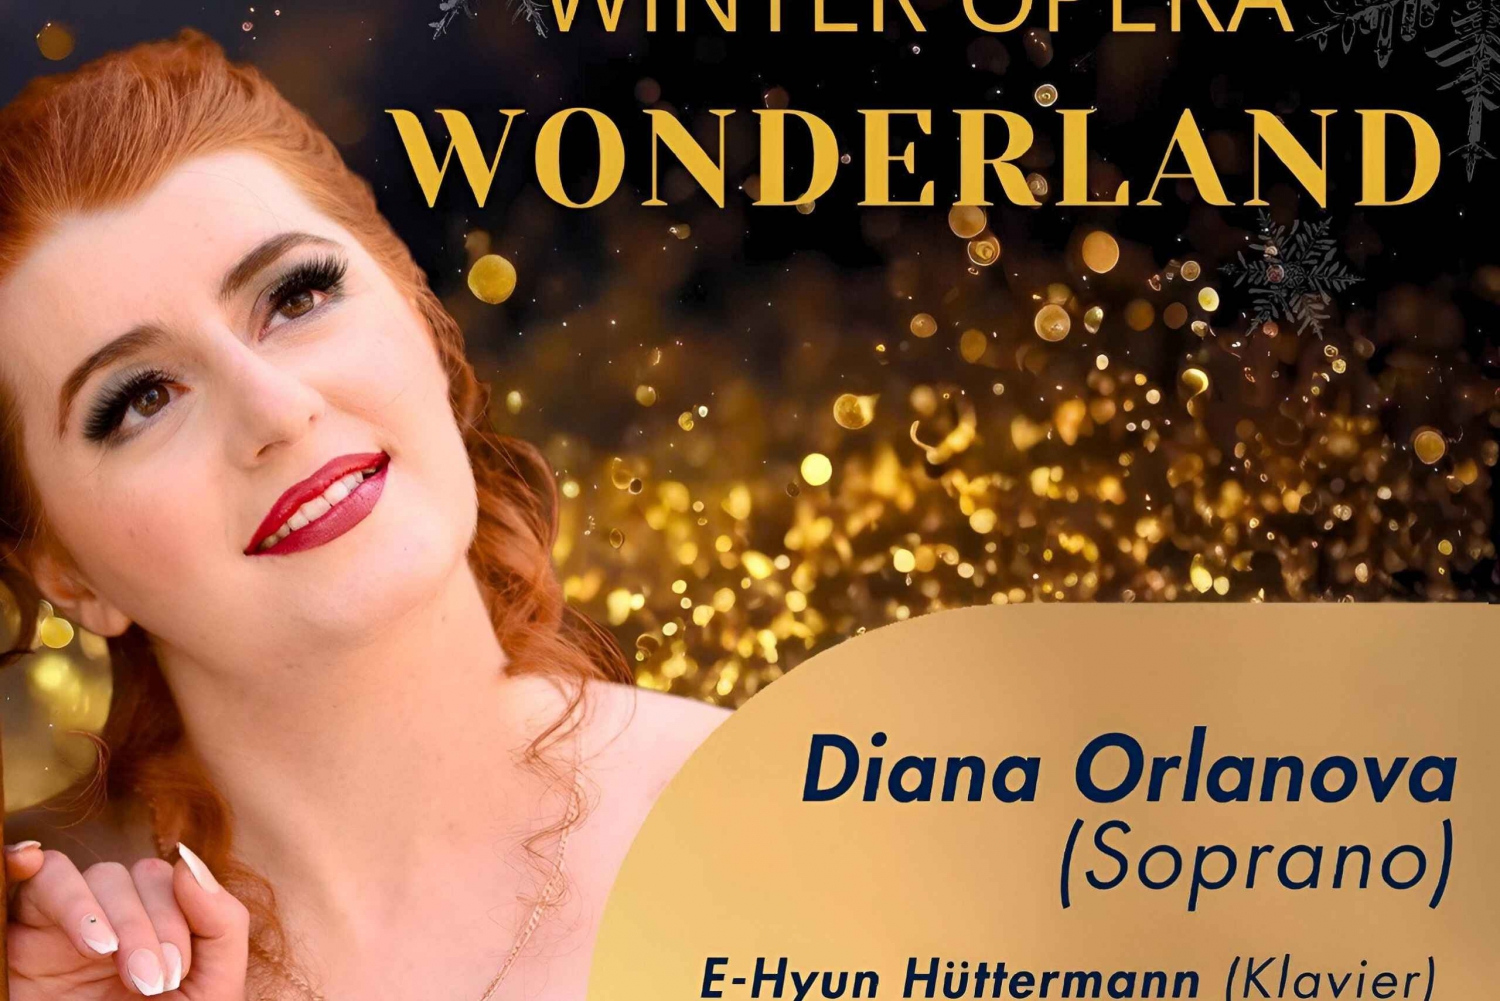 Talvinen oopperan ihmemaa: Teemallinen oopperakonsertti Wienissä